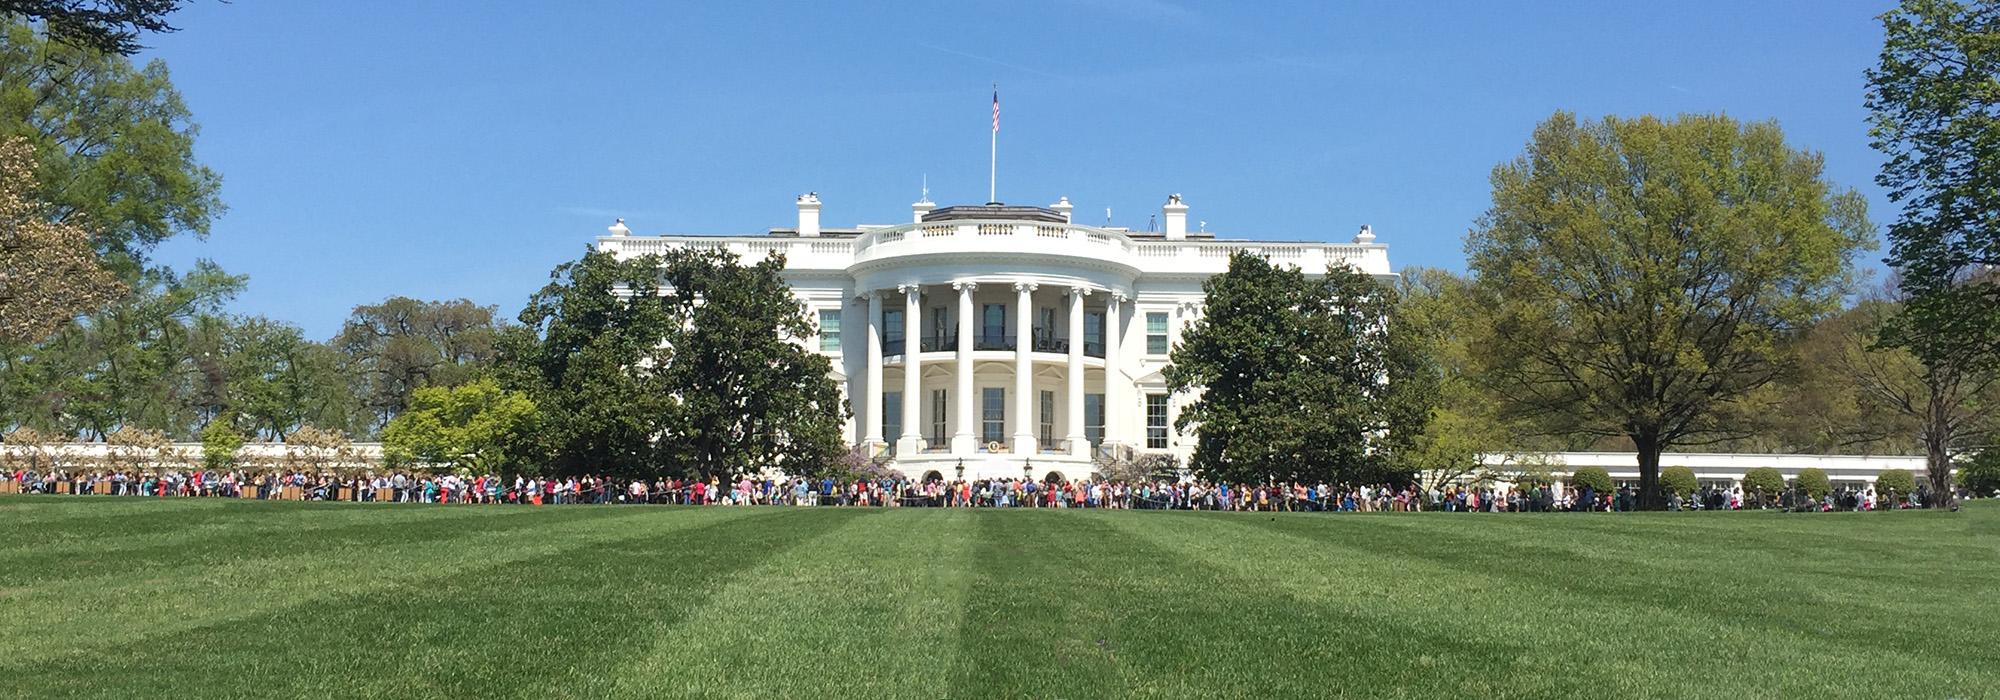 White House Grounds, Washington, D.C.